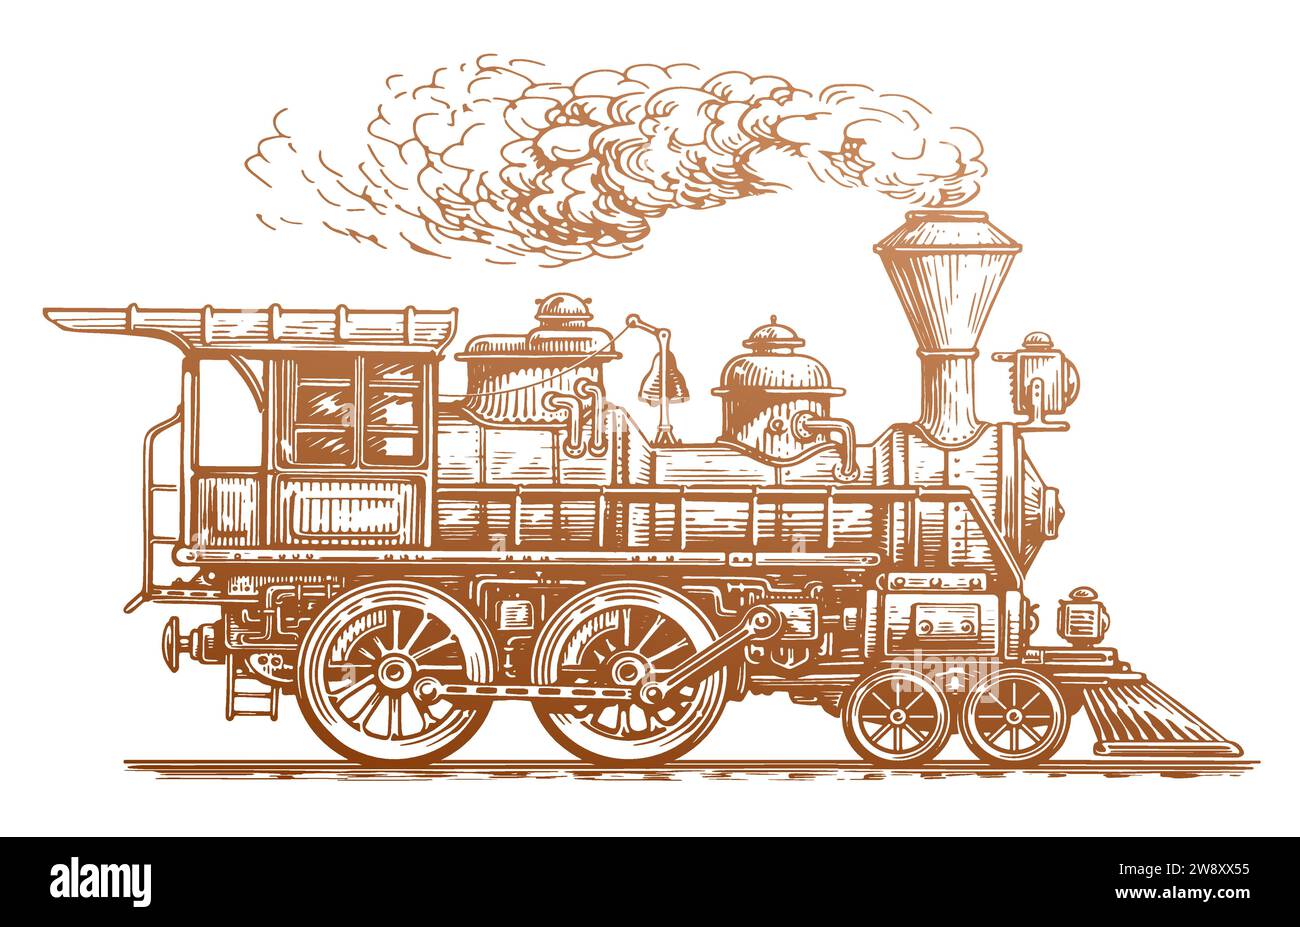 Tren retro, vista lateral. Dibujado a mano locomotora de vapor vintage en estilo de boceto. Ilustración vectorial de transporte Ilustración del Vector